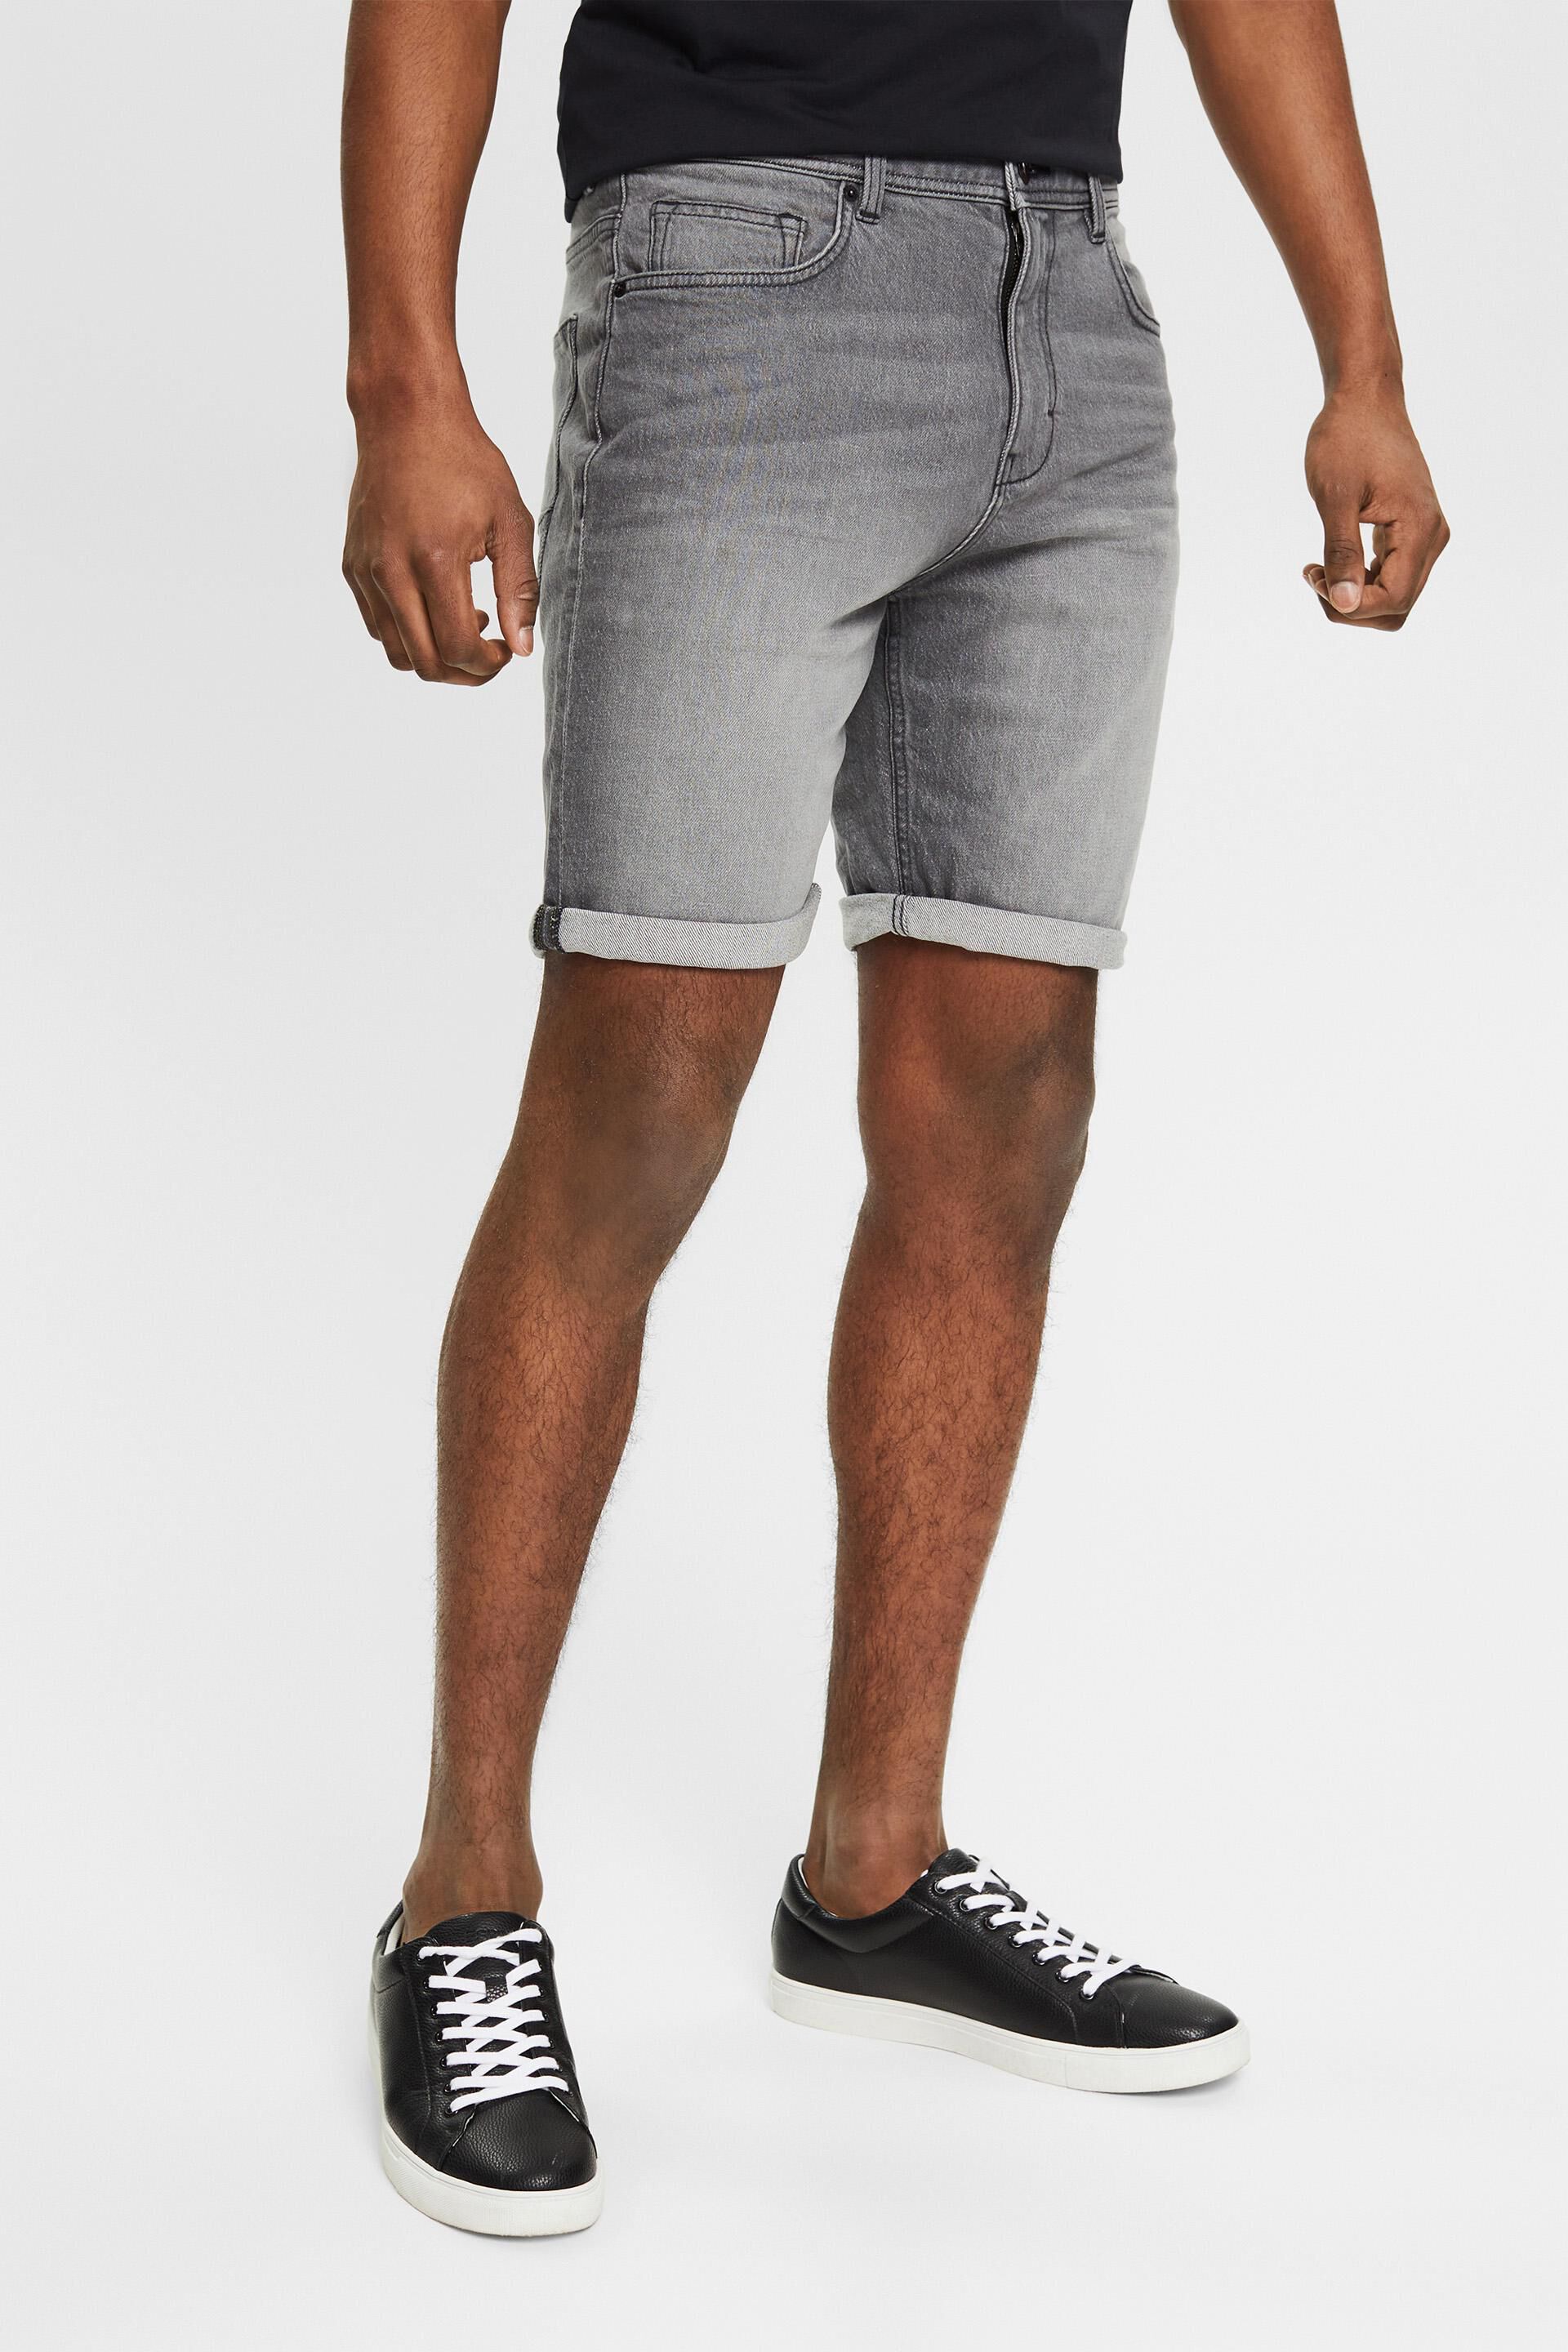 Herren Bekleidung Kurze Hosen Bermudas Sun 68 Baumwolle Shorts & Bermudashorts in Grau für Herren 